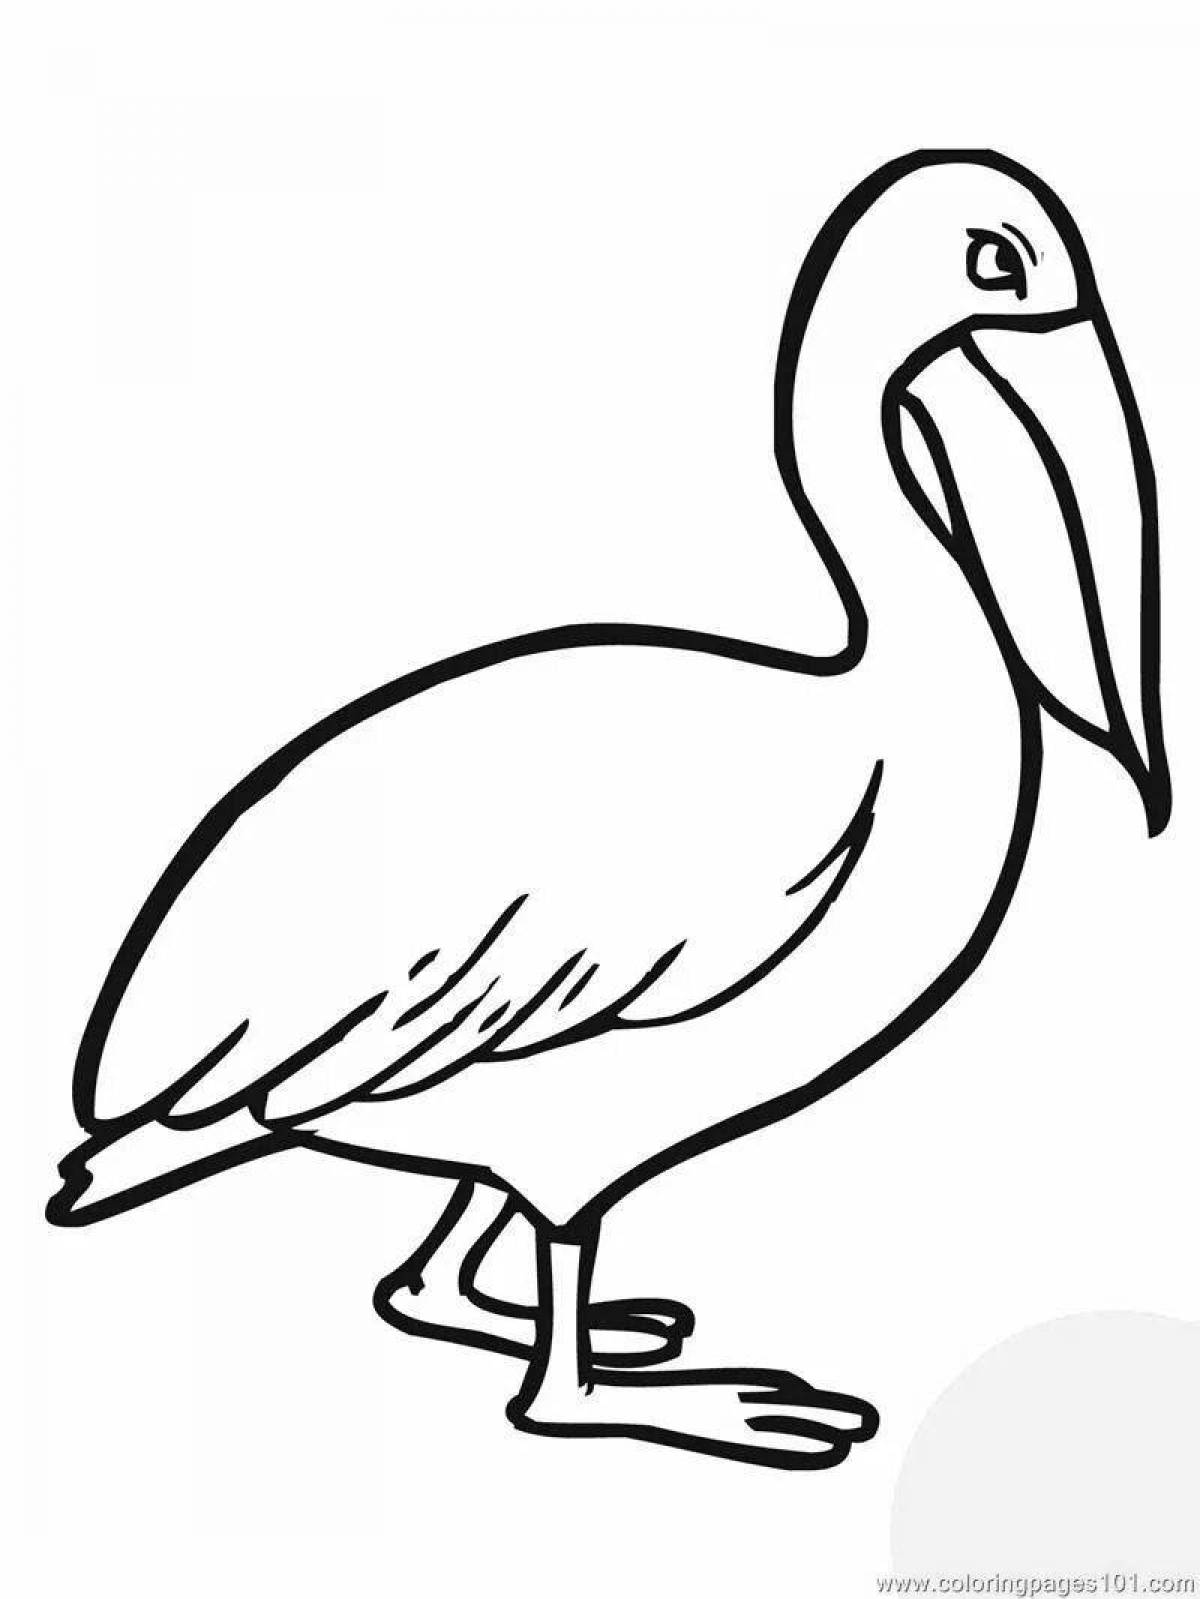 Children's pelican coloring book